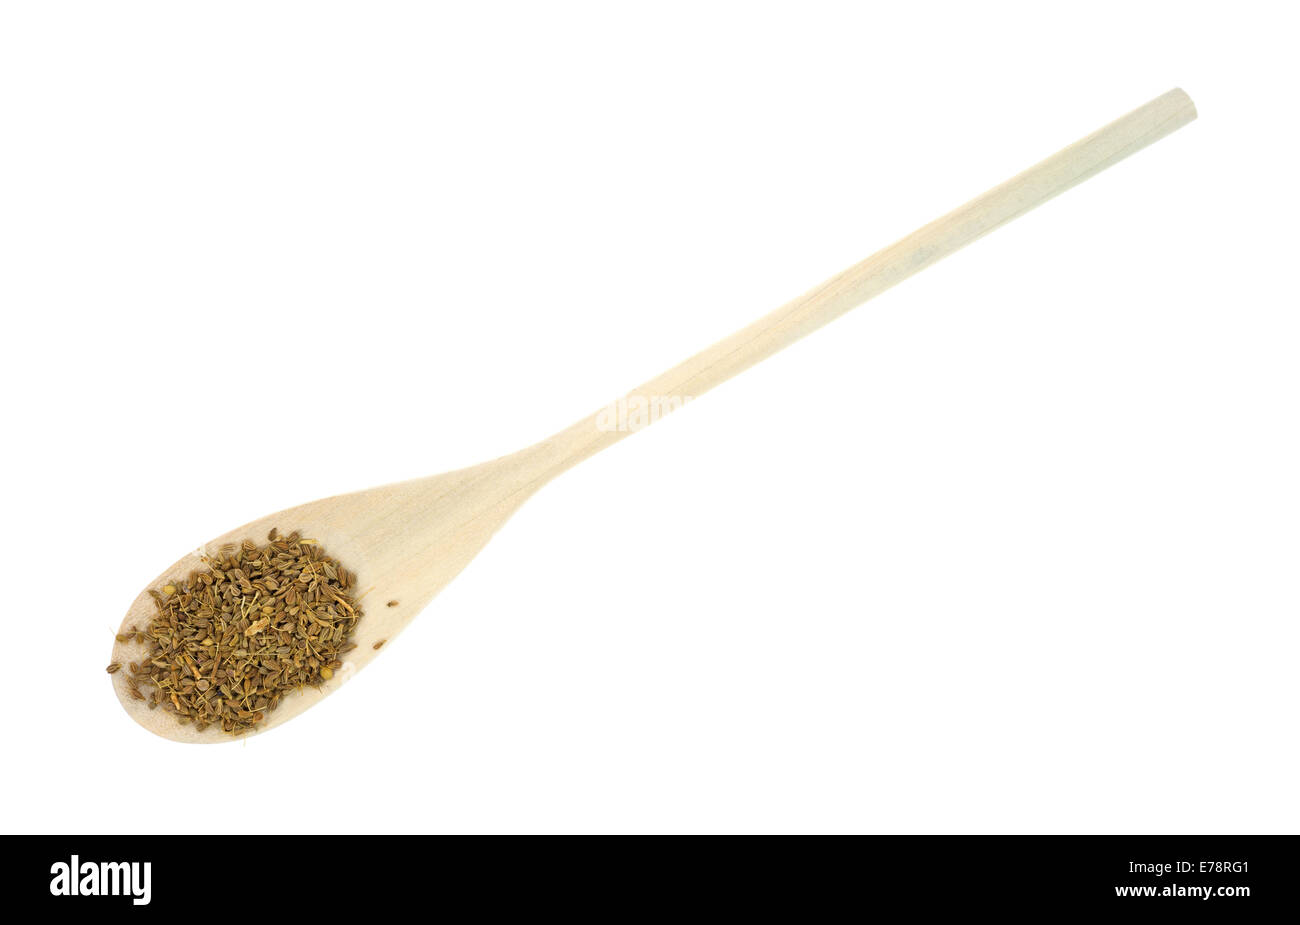 Un lungo cucchiaio di legno con i semi di anice su uno sfondo bianco. Foto Stock